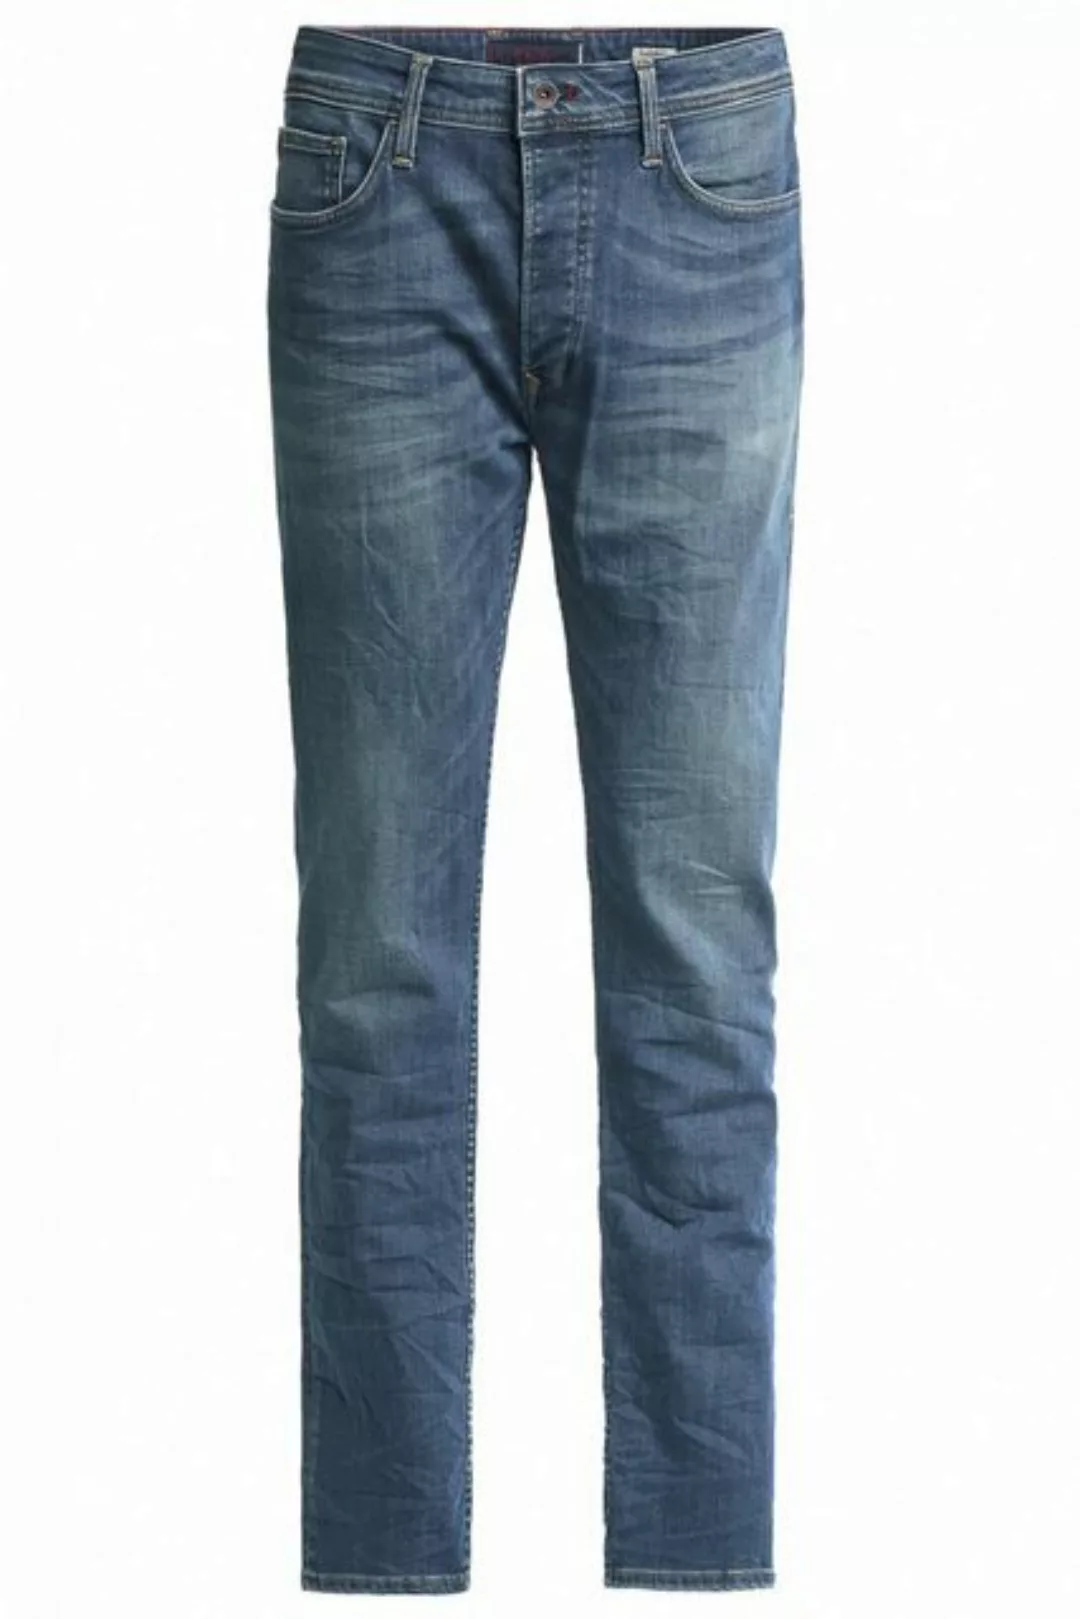 Salsa 5-Pocket-Jeans SALSA JEANS LIMA mid blue used washed 125226.8503 günstig online kaufen